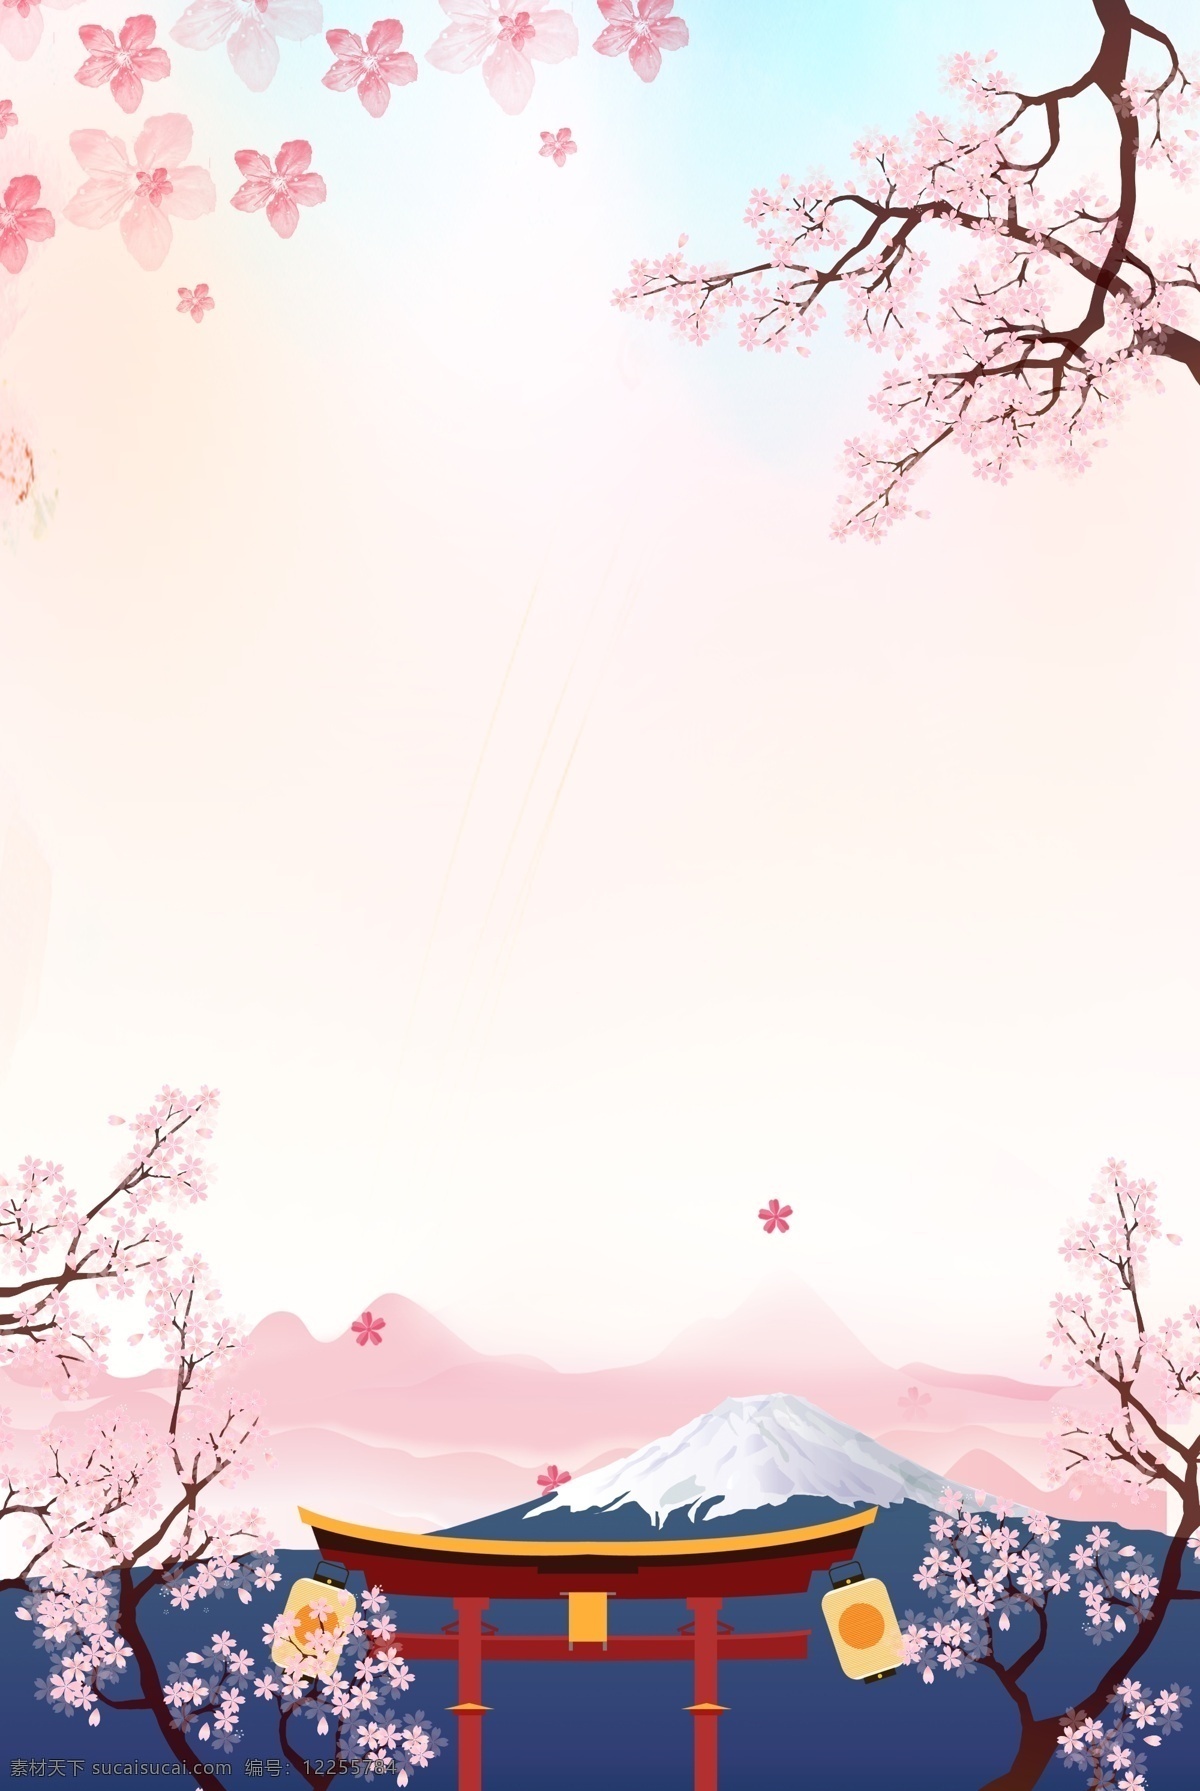 日本旅游 清新 风海 报 背景 日本 旅游 出国游 樱花 粉色 雪山 富士山 日系 和风 旅游海报